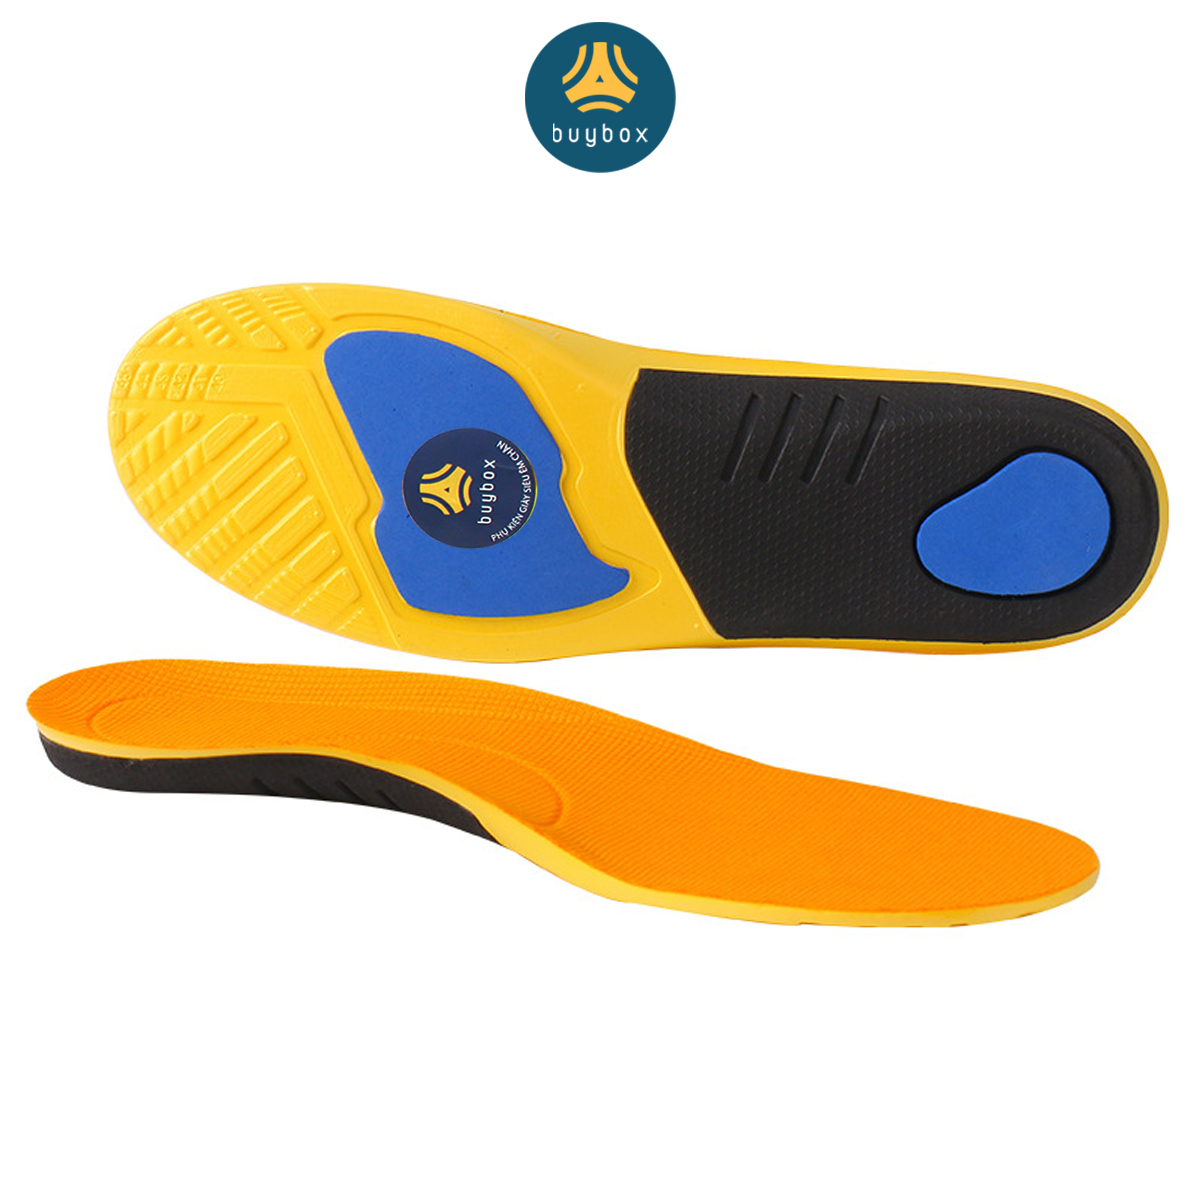 Lót giày thể thao EVA 4D ốp mút PU cứng giảm chấn vòm ngang và chống thốn gót - buybox - BBPK180